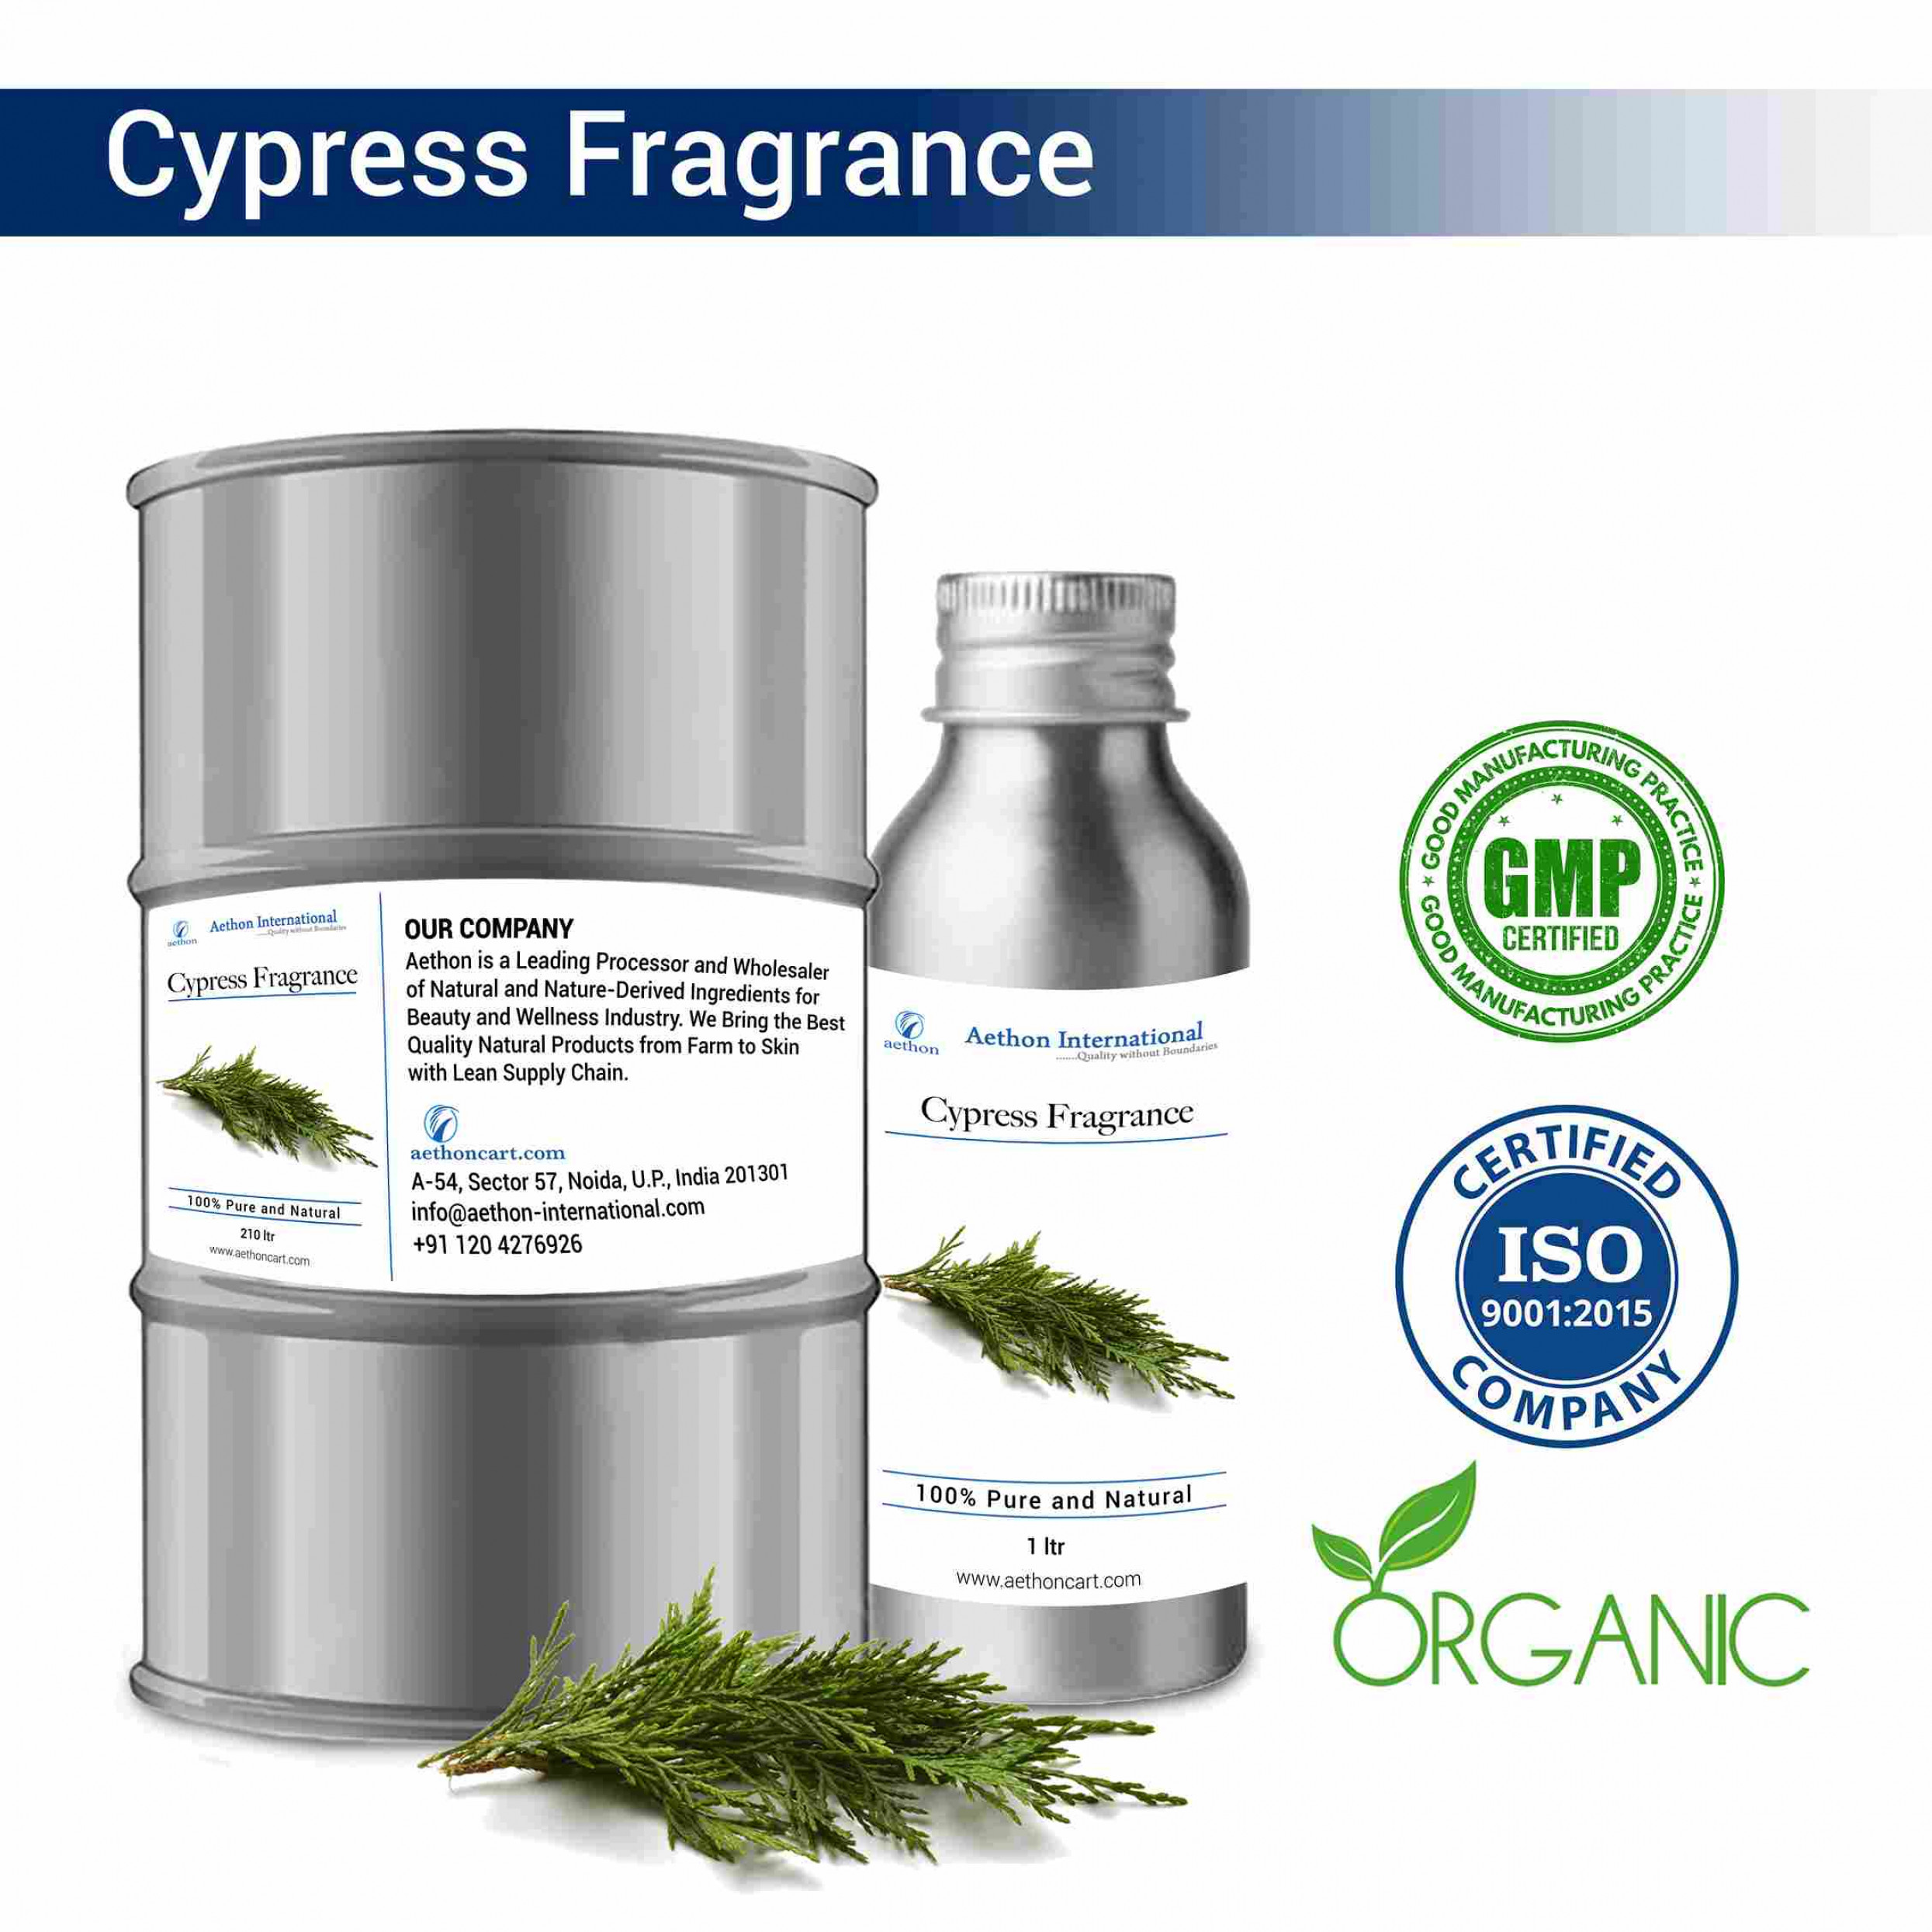 Cypress Fragrance